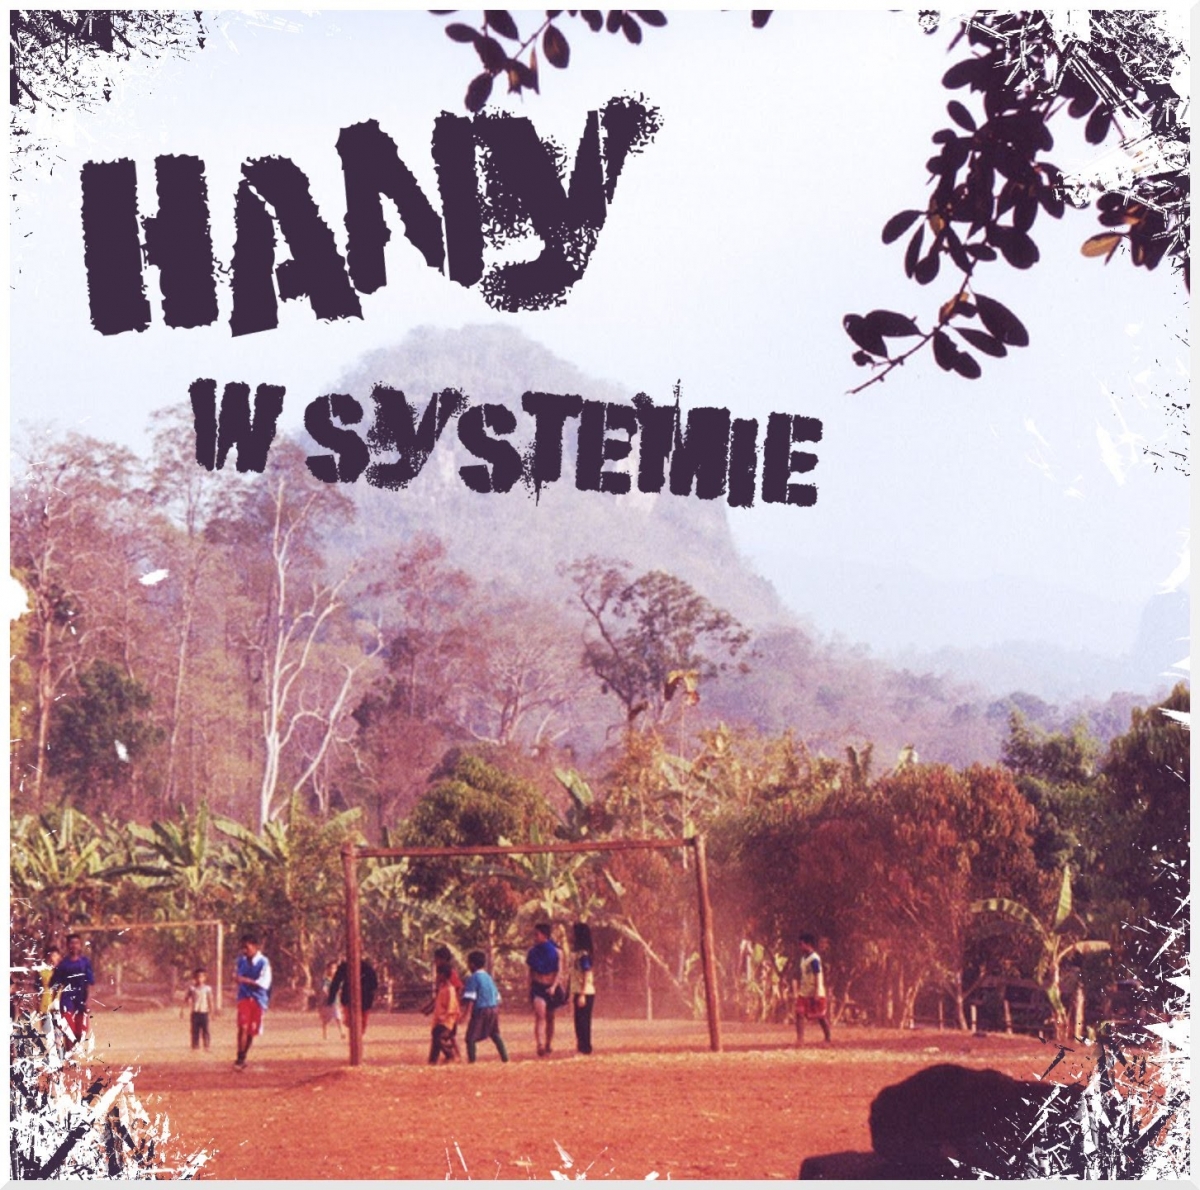 1. Hany (Zbiry Crew) - Po co (EP "W Systemie")